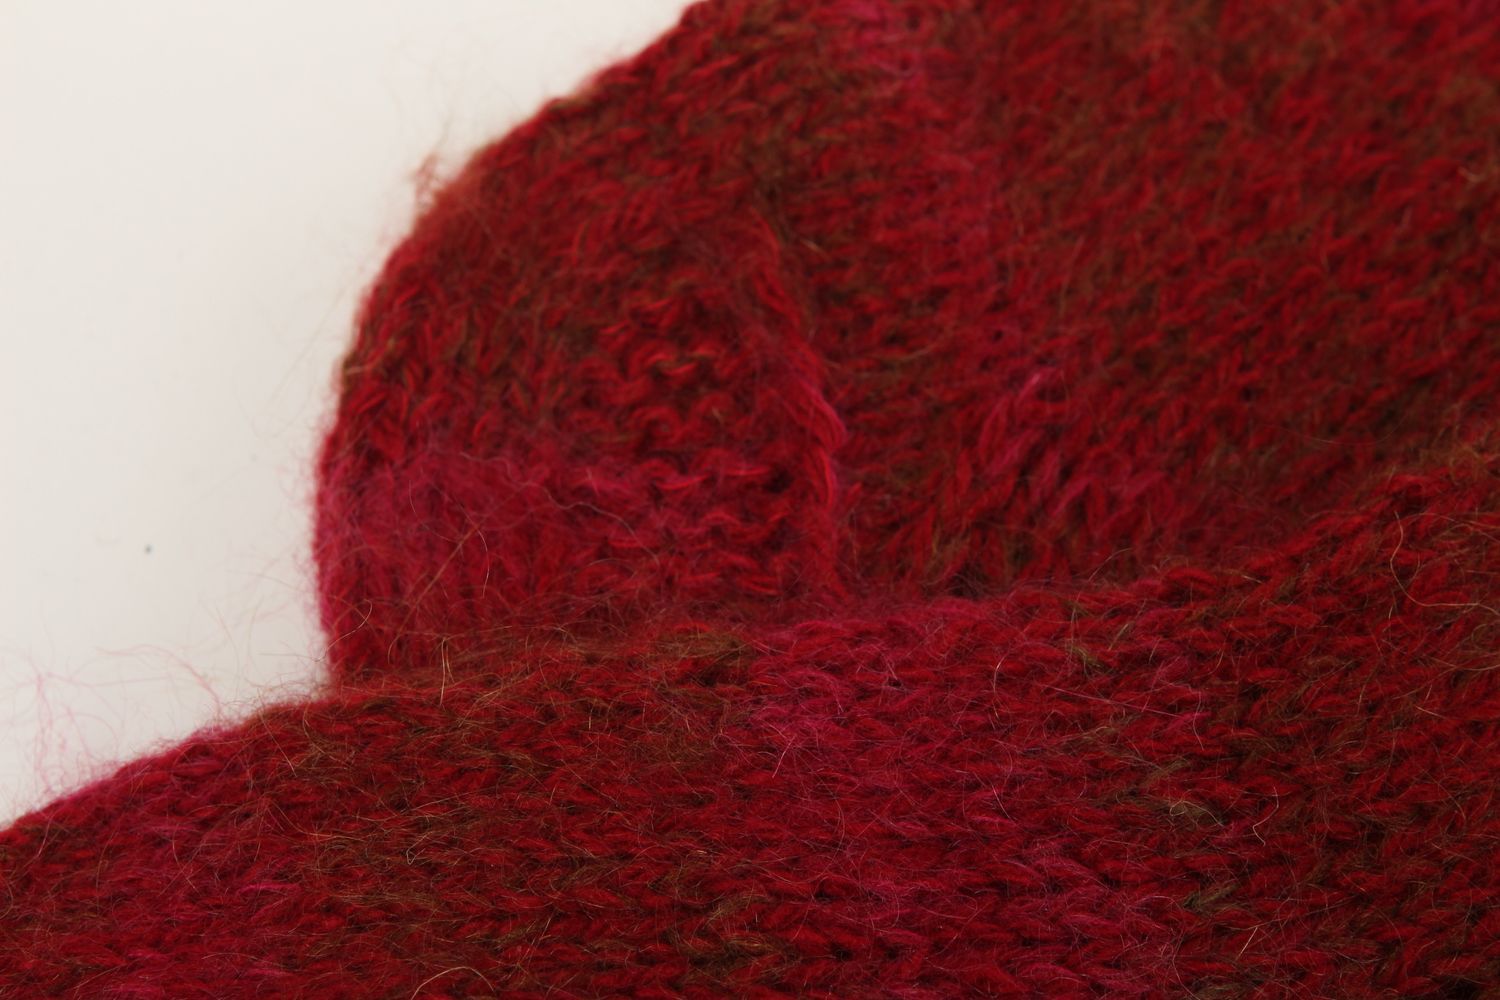 Homemade knitted woolen socks warm winter socks best wool socks gifts for women photo 4